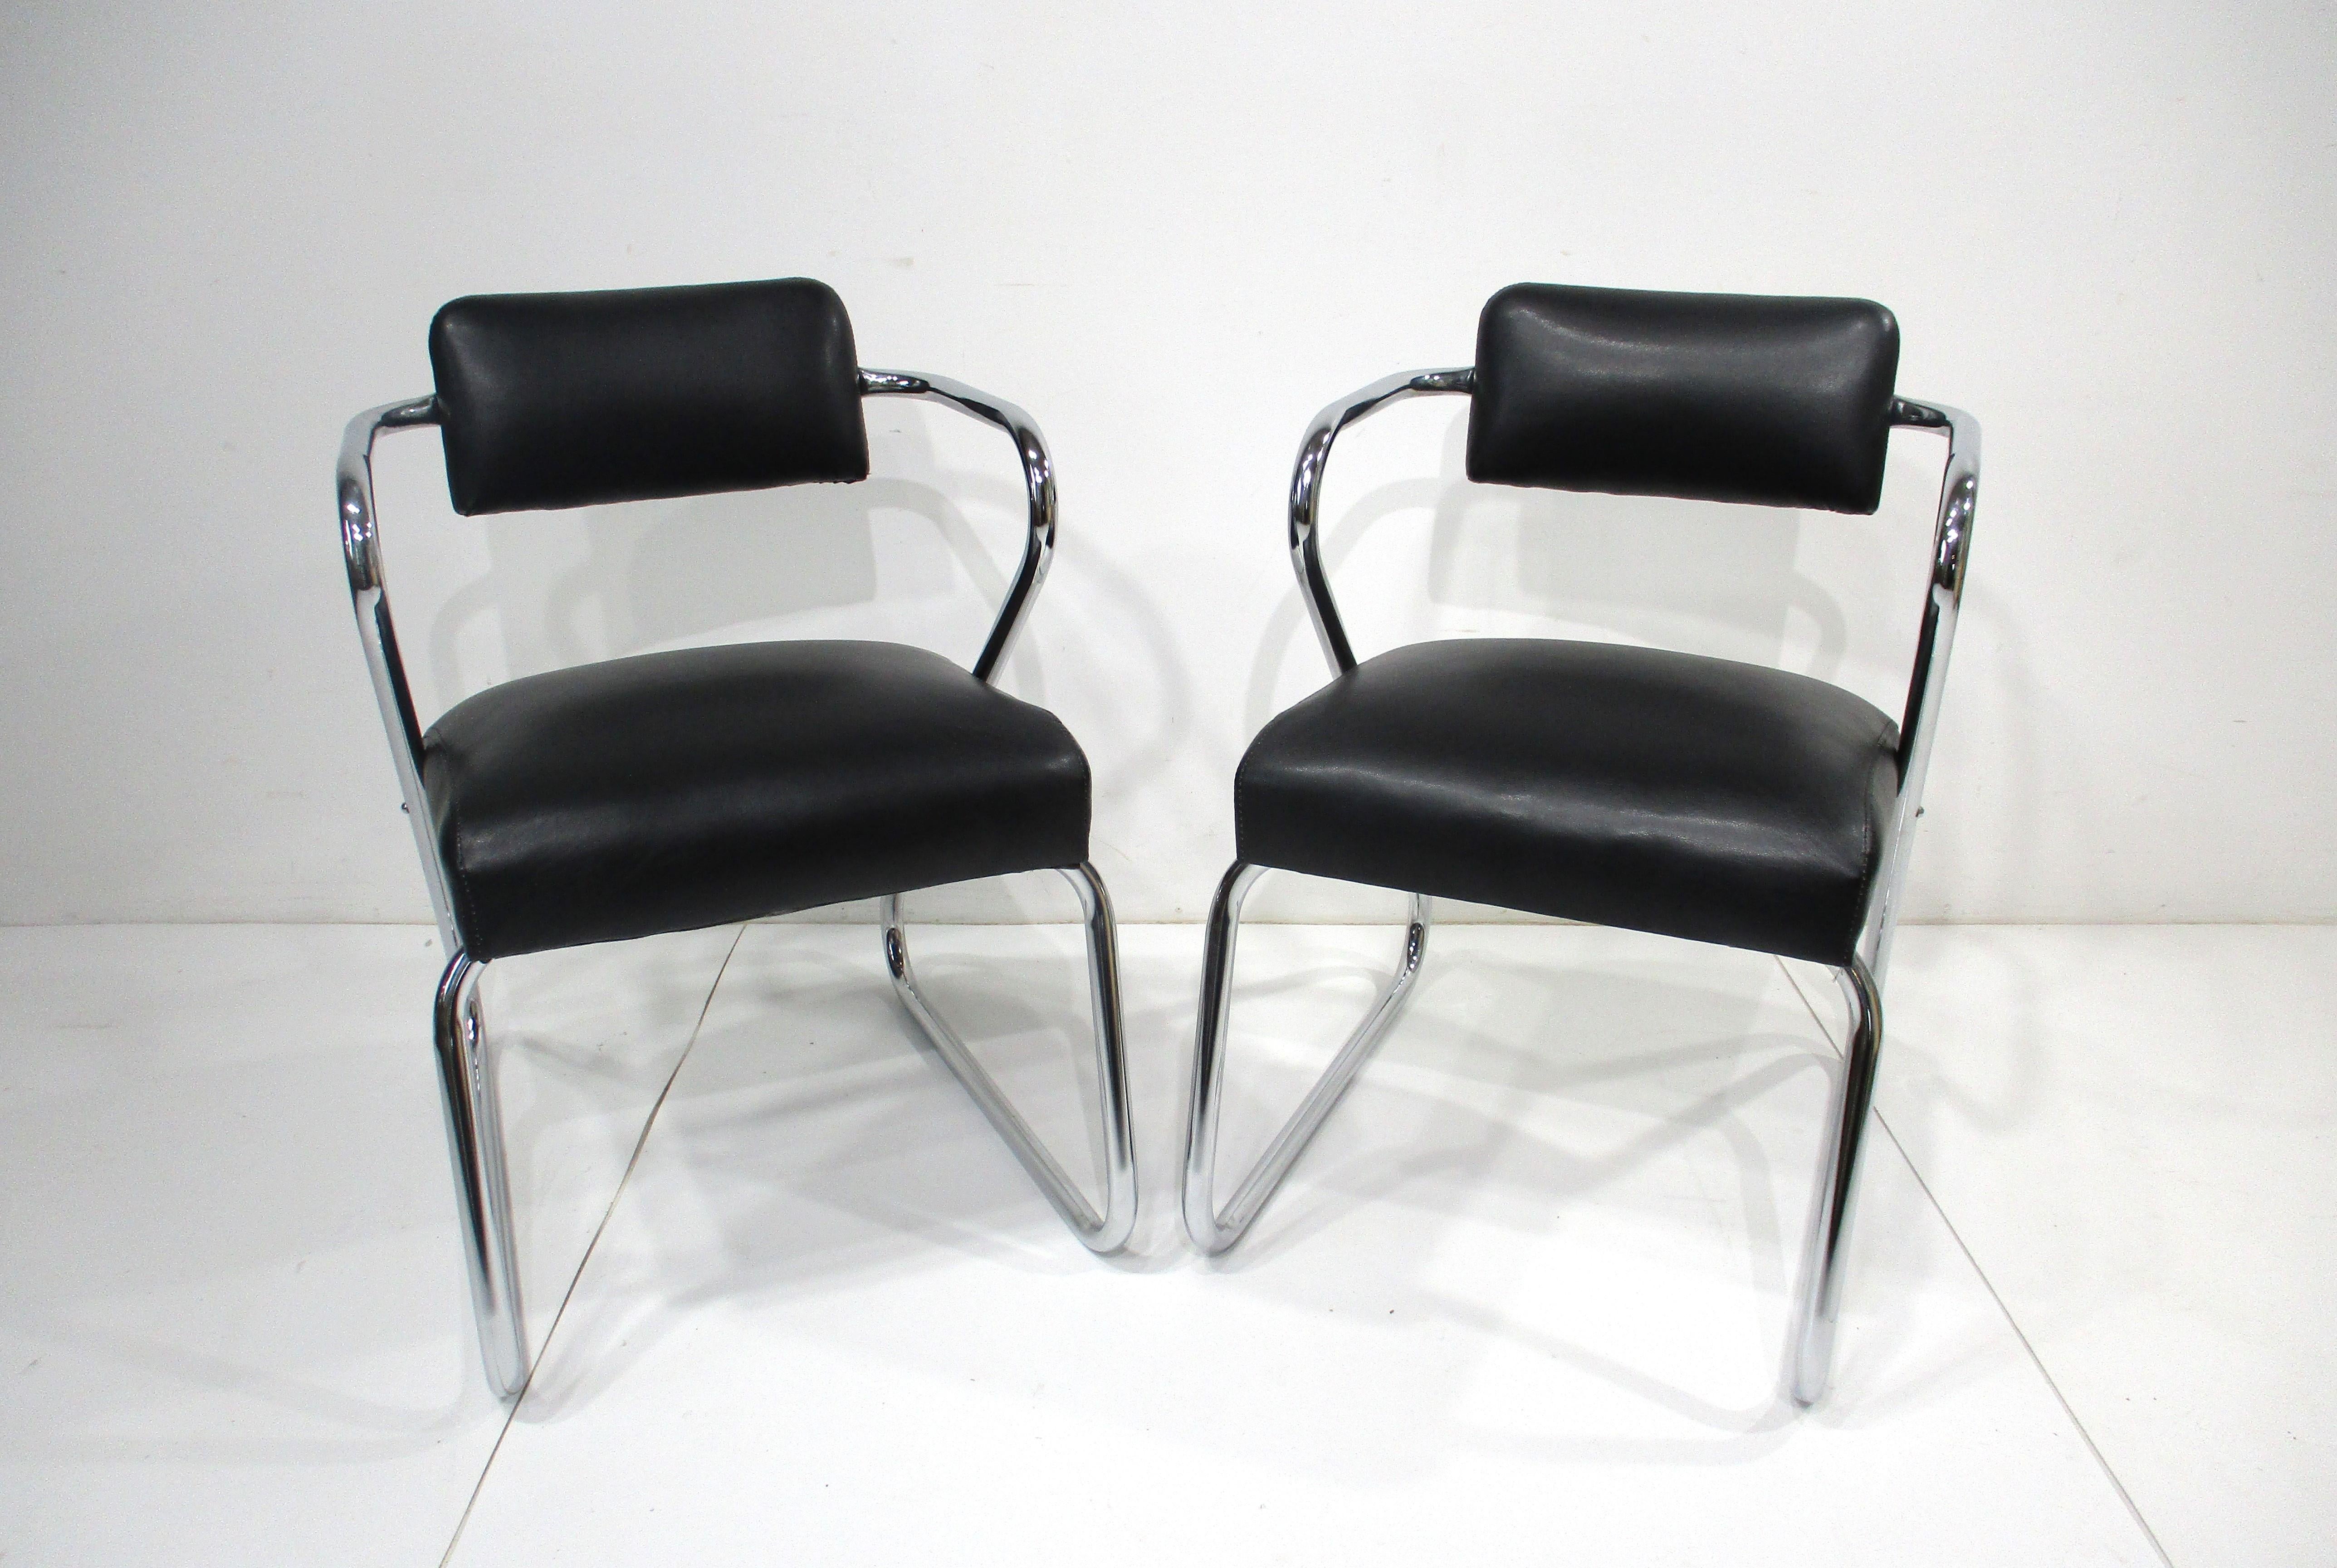 Un ensemble de deux chaises d'assise sculpturales à cadre chromé dans le style des chaises Z de Gilbert Rohde. Tapissés d'un tissu en similicuir noir satiné, doux et lisse, ils sont très confortables pendant de longues périodes. Fabriqué par Royal